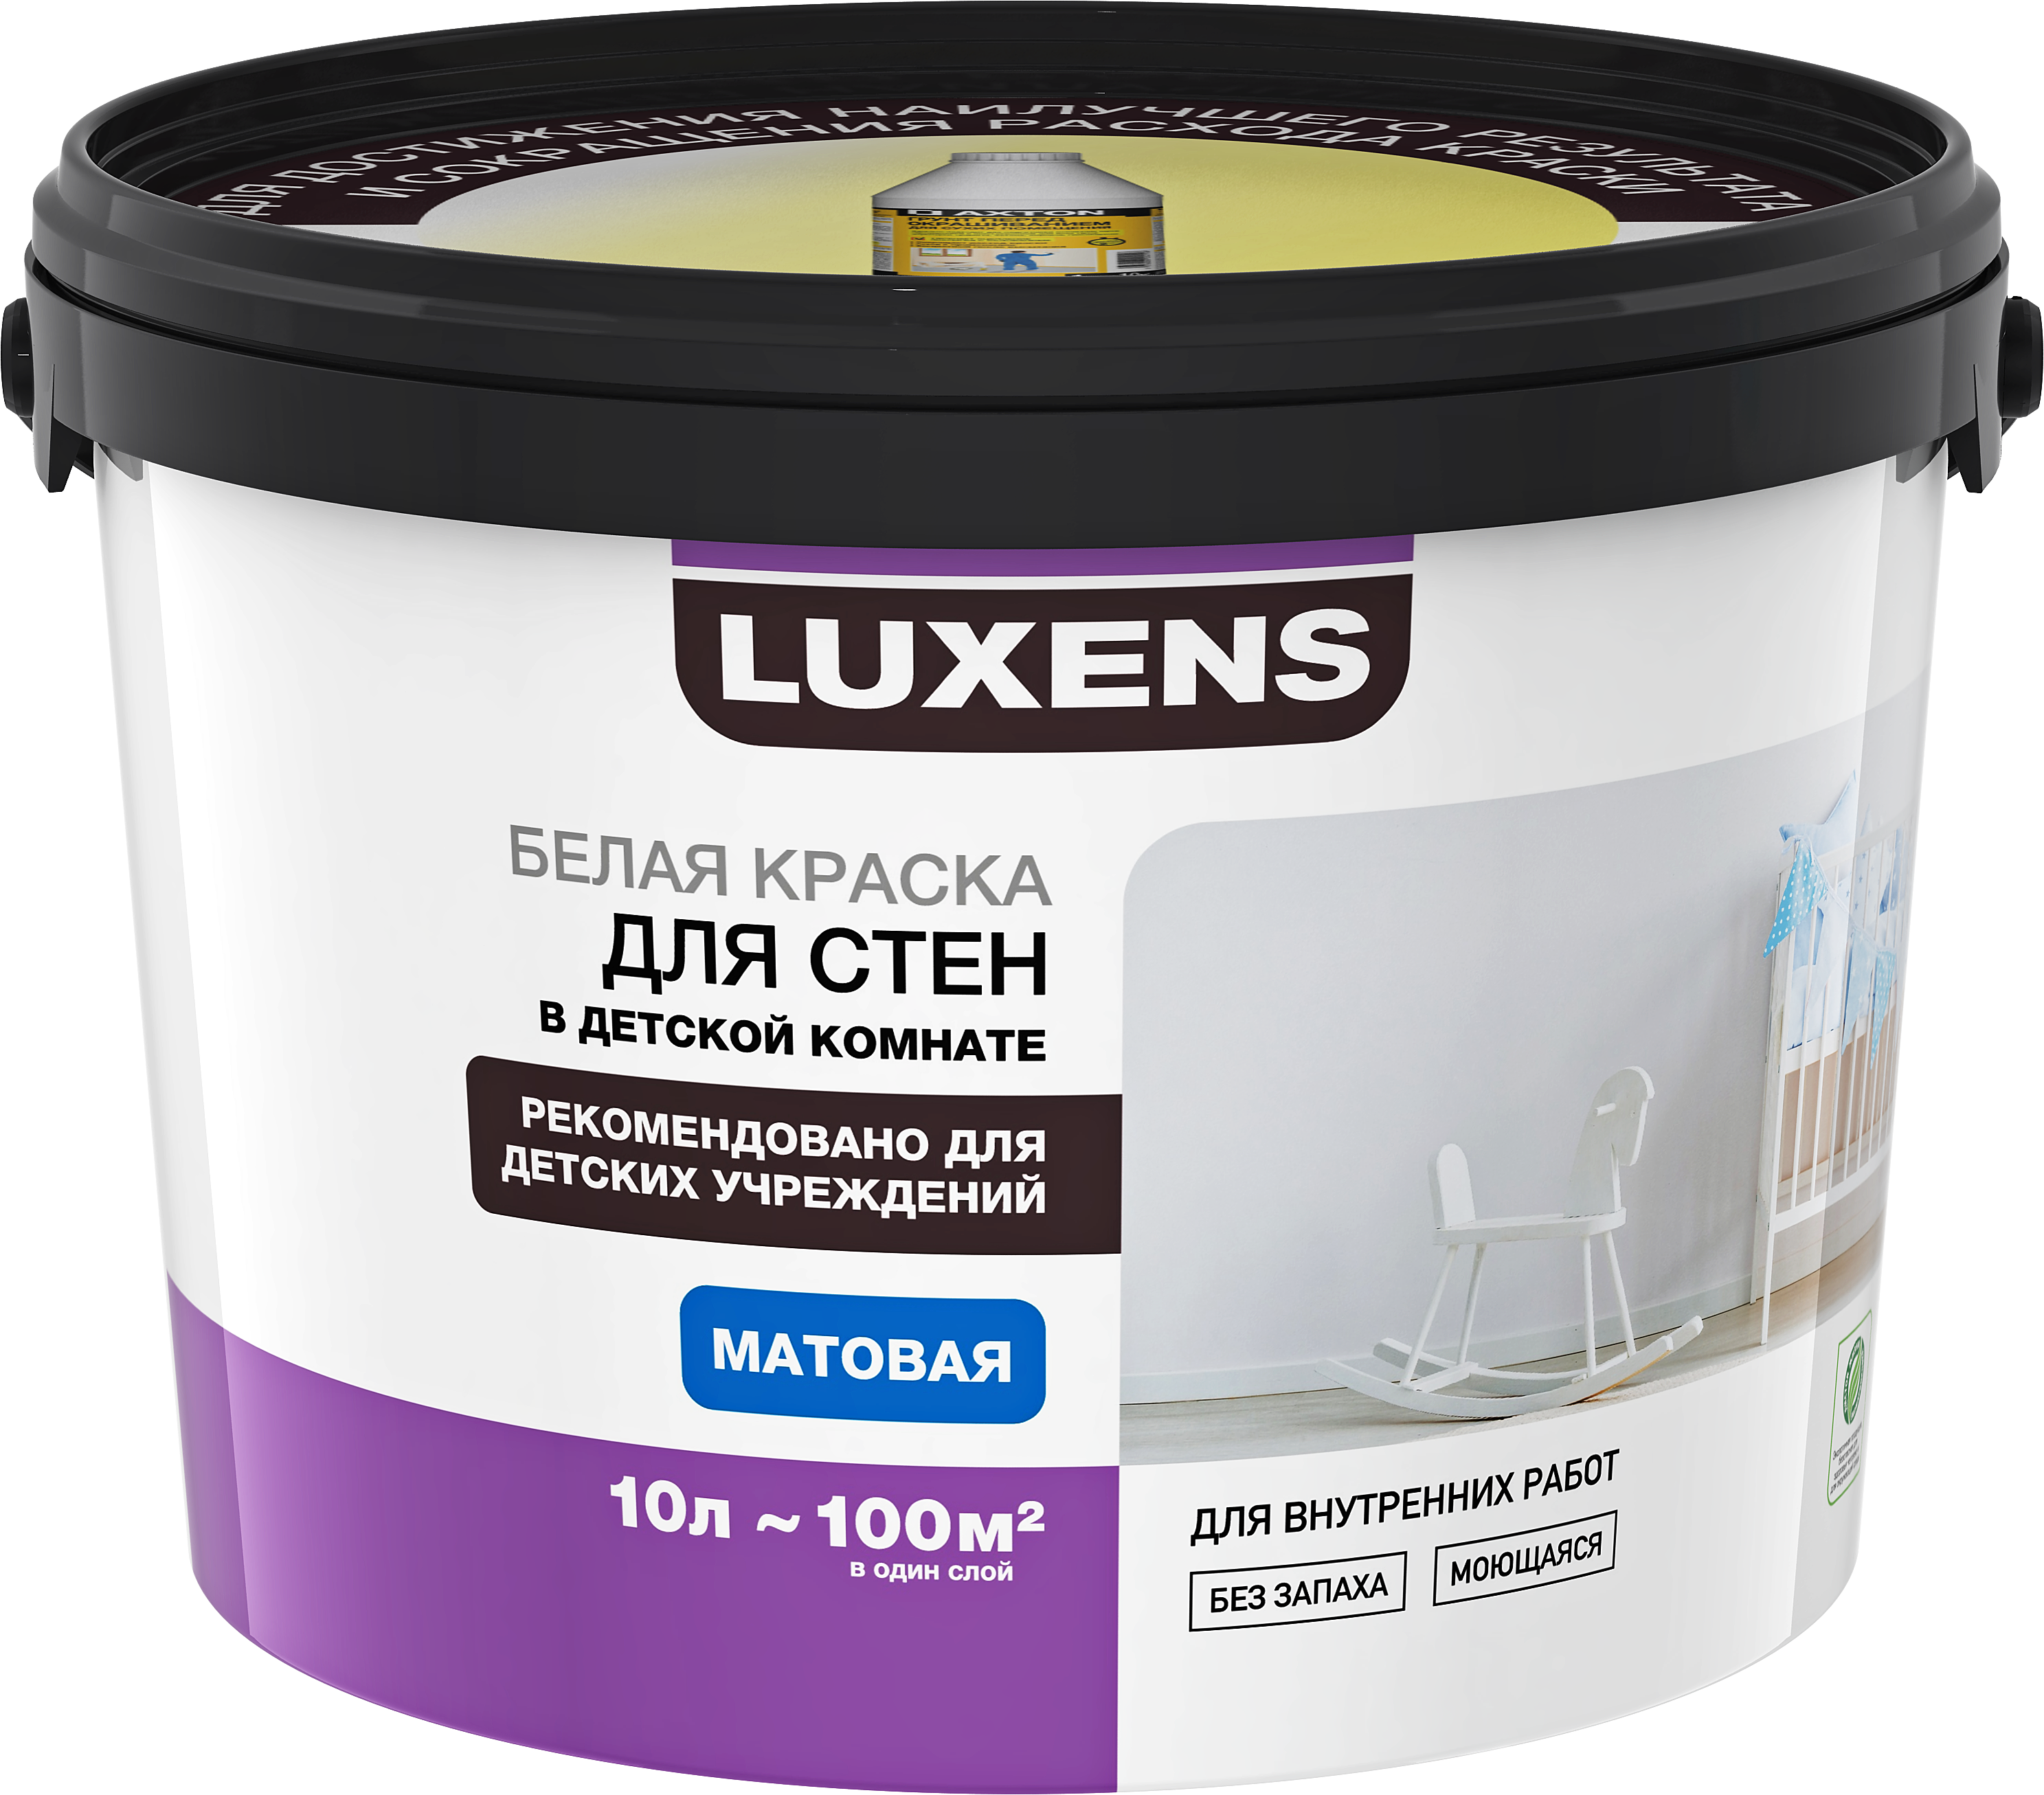 Краска в леруа мерлен. Luxens база a 10 л. Краска для стен и потолков Luxens база a 10 л. Luxens краска для стен и потолков белая матовая 10 л. Luxens краска для стен и потолков матовая.